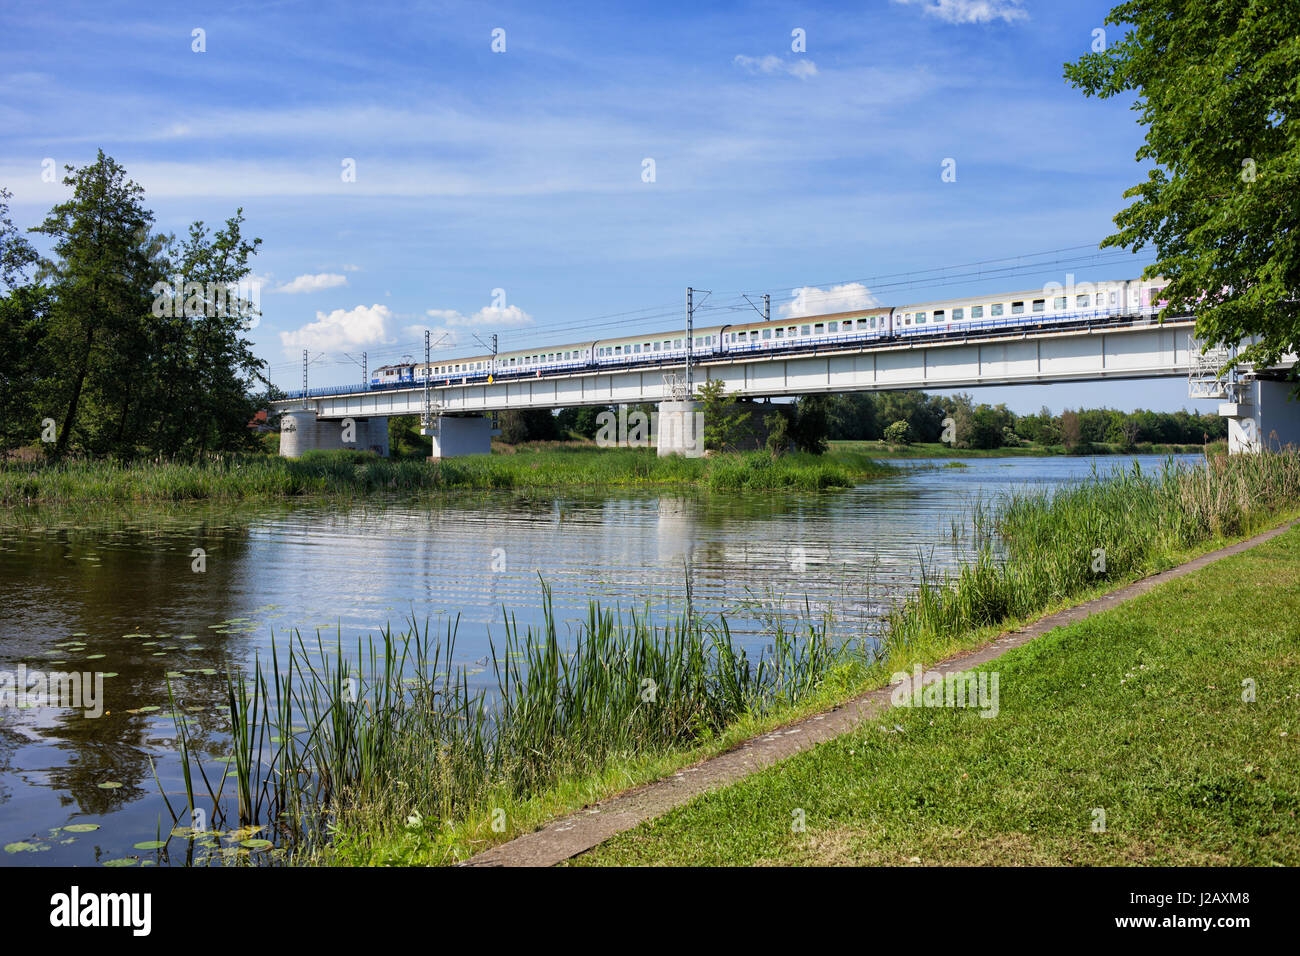 La Rivière Nogat avec train sur pont ferroviaire à Malbork, occidentale, Pologne Banque D'Images